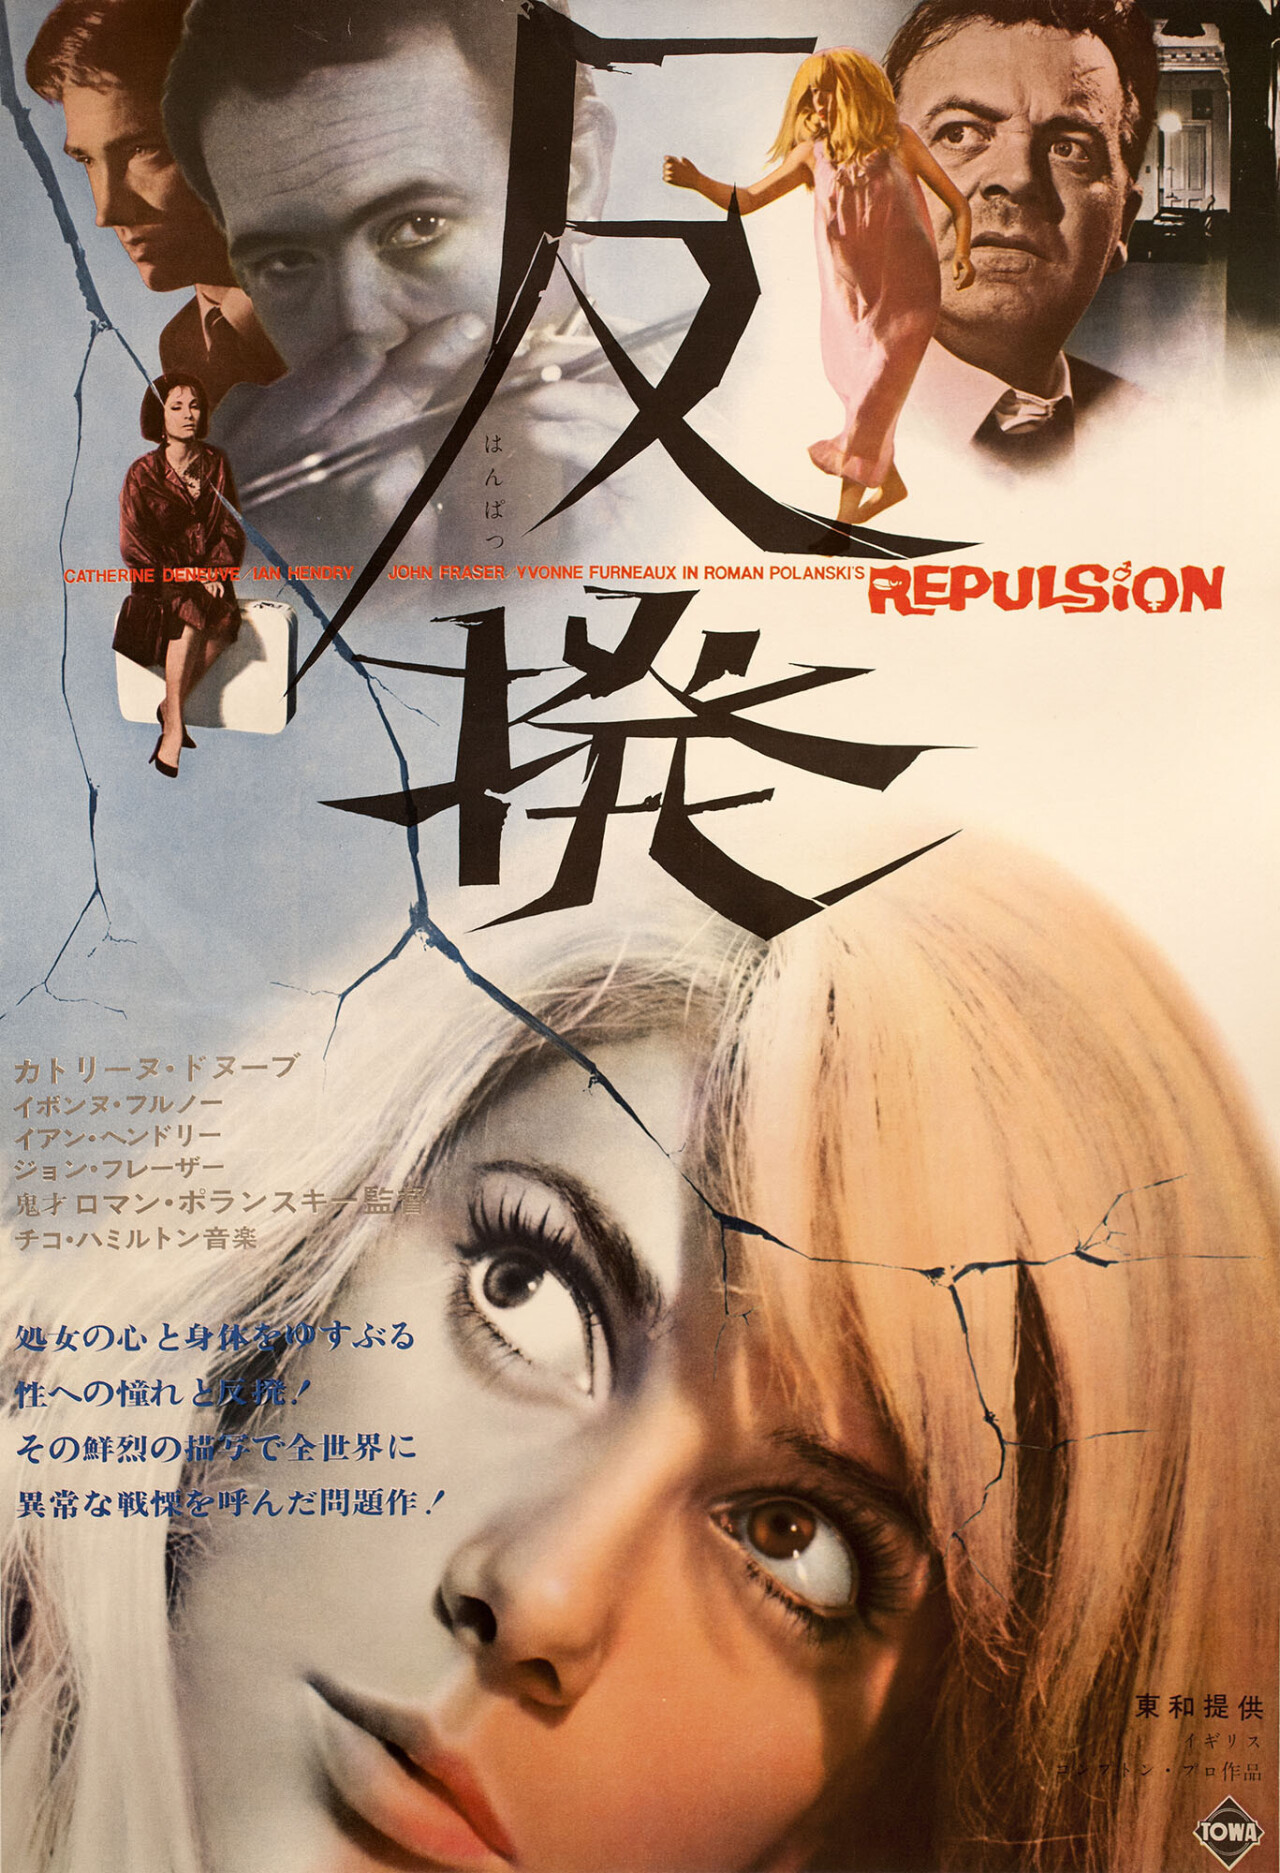 Отвращение (Repulsion, 1965), режиссёр Роман Полански, японский постер к фильму (ужасы, 1965 год)